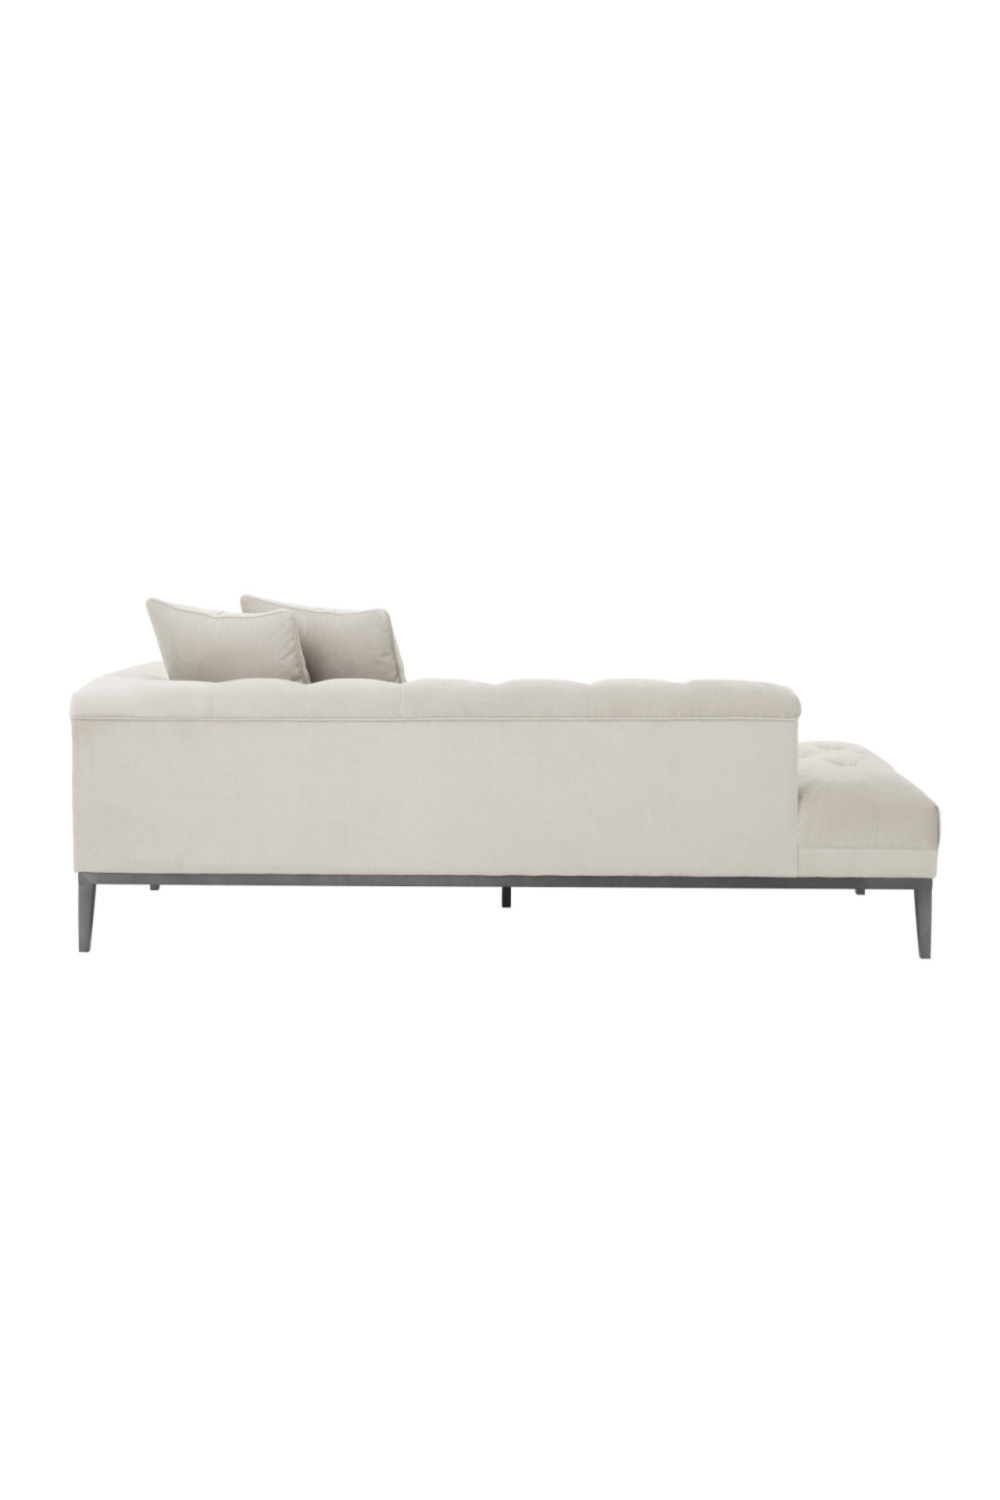 Gray Tufted Modular Sofa | Eichholtz Cesare | Oroa.com